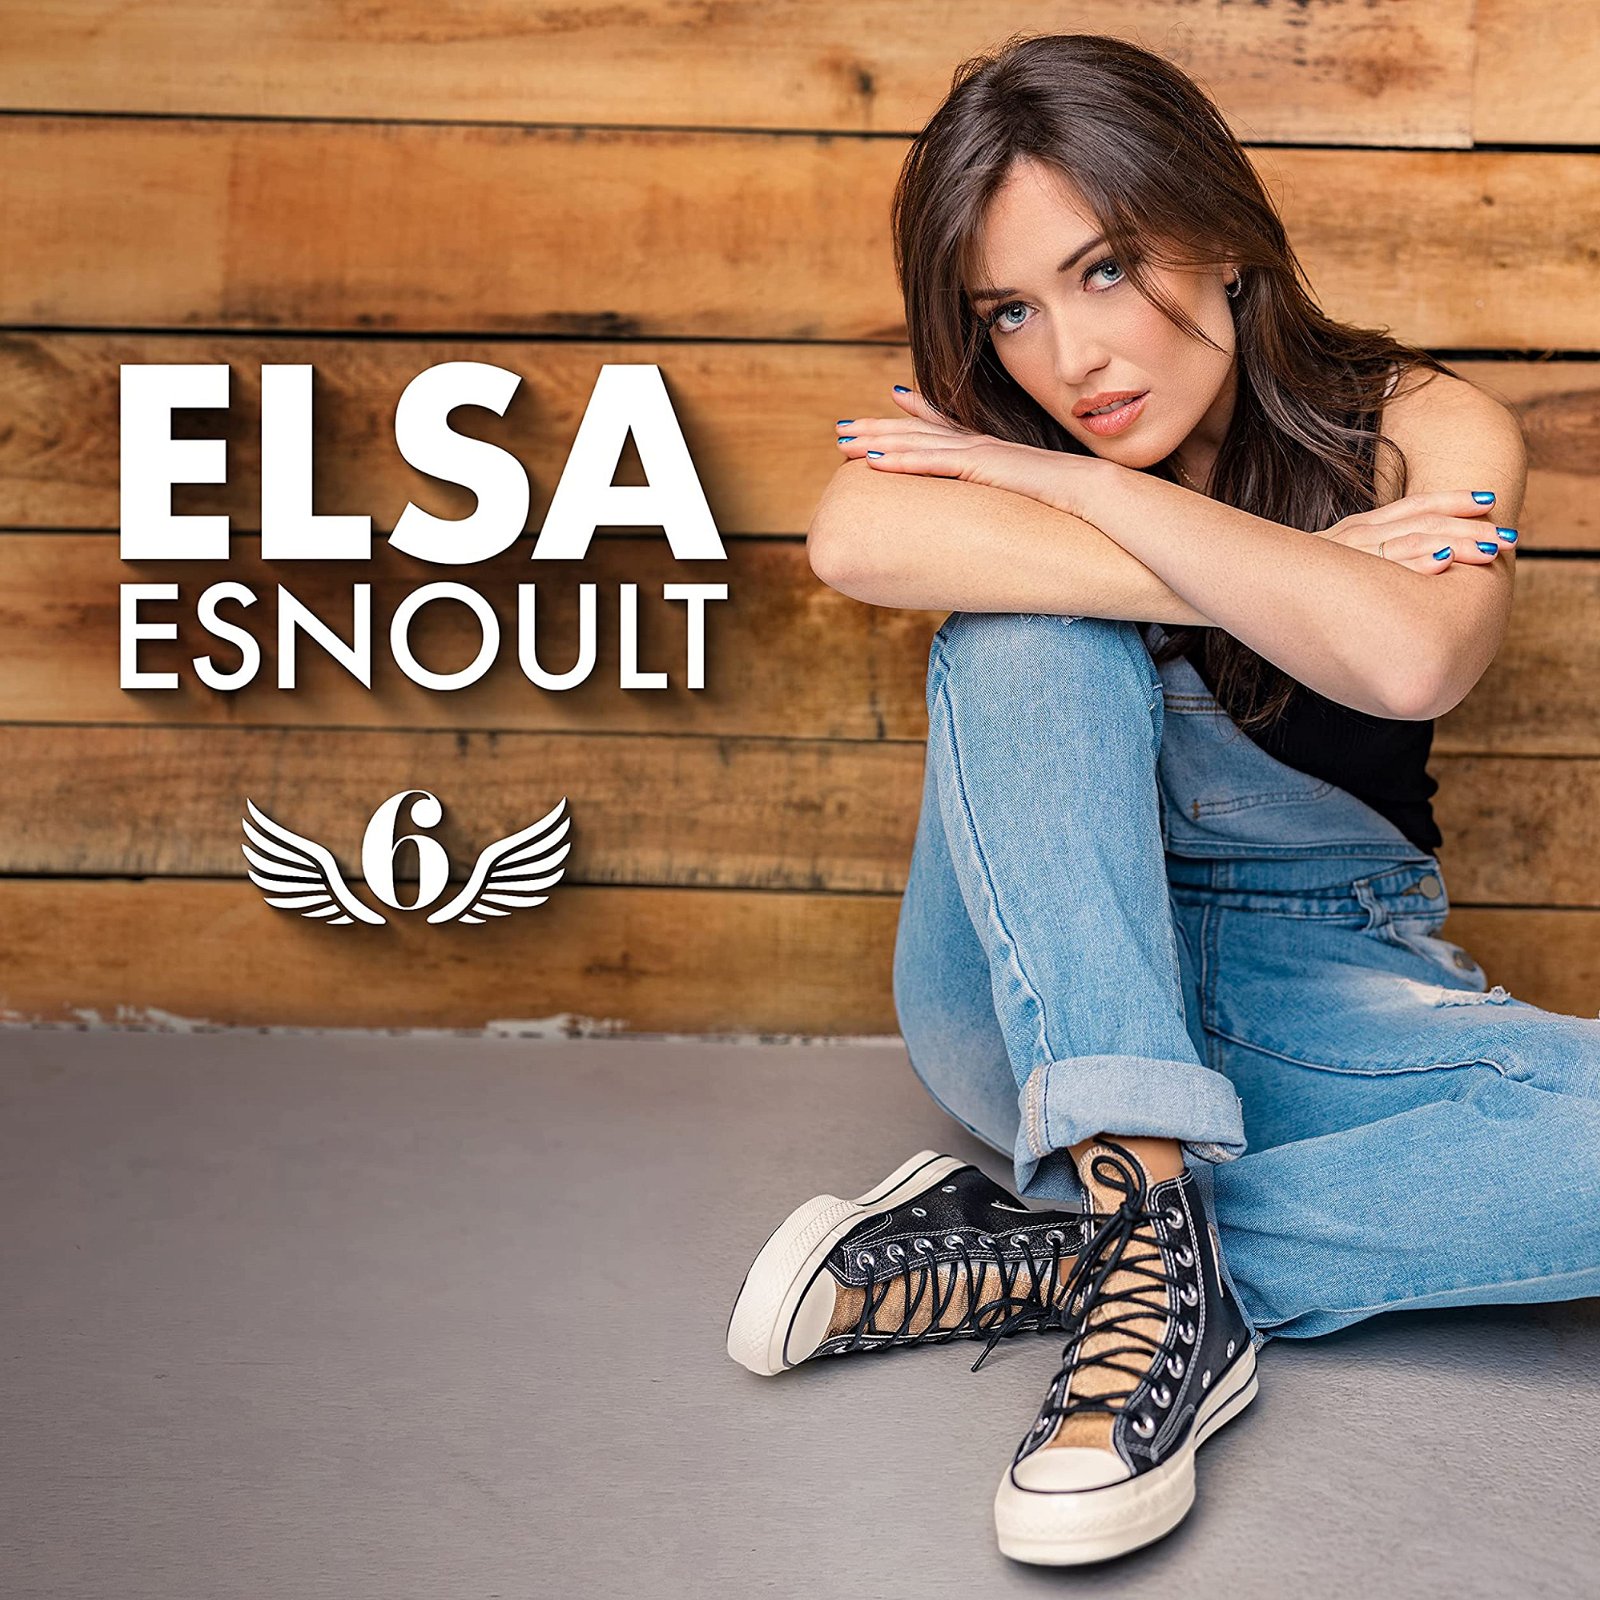 CD Shop - ESNOULT, ELSA 6